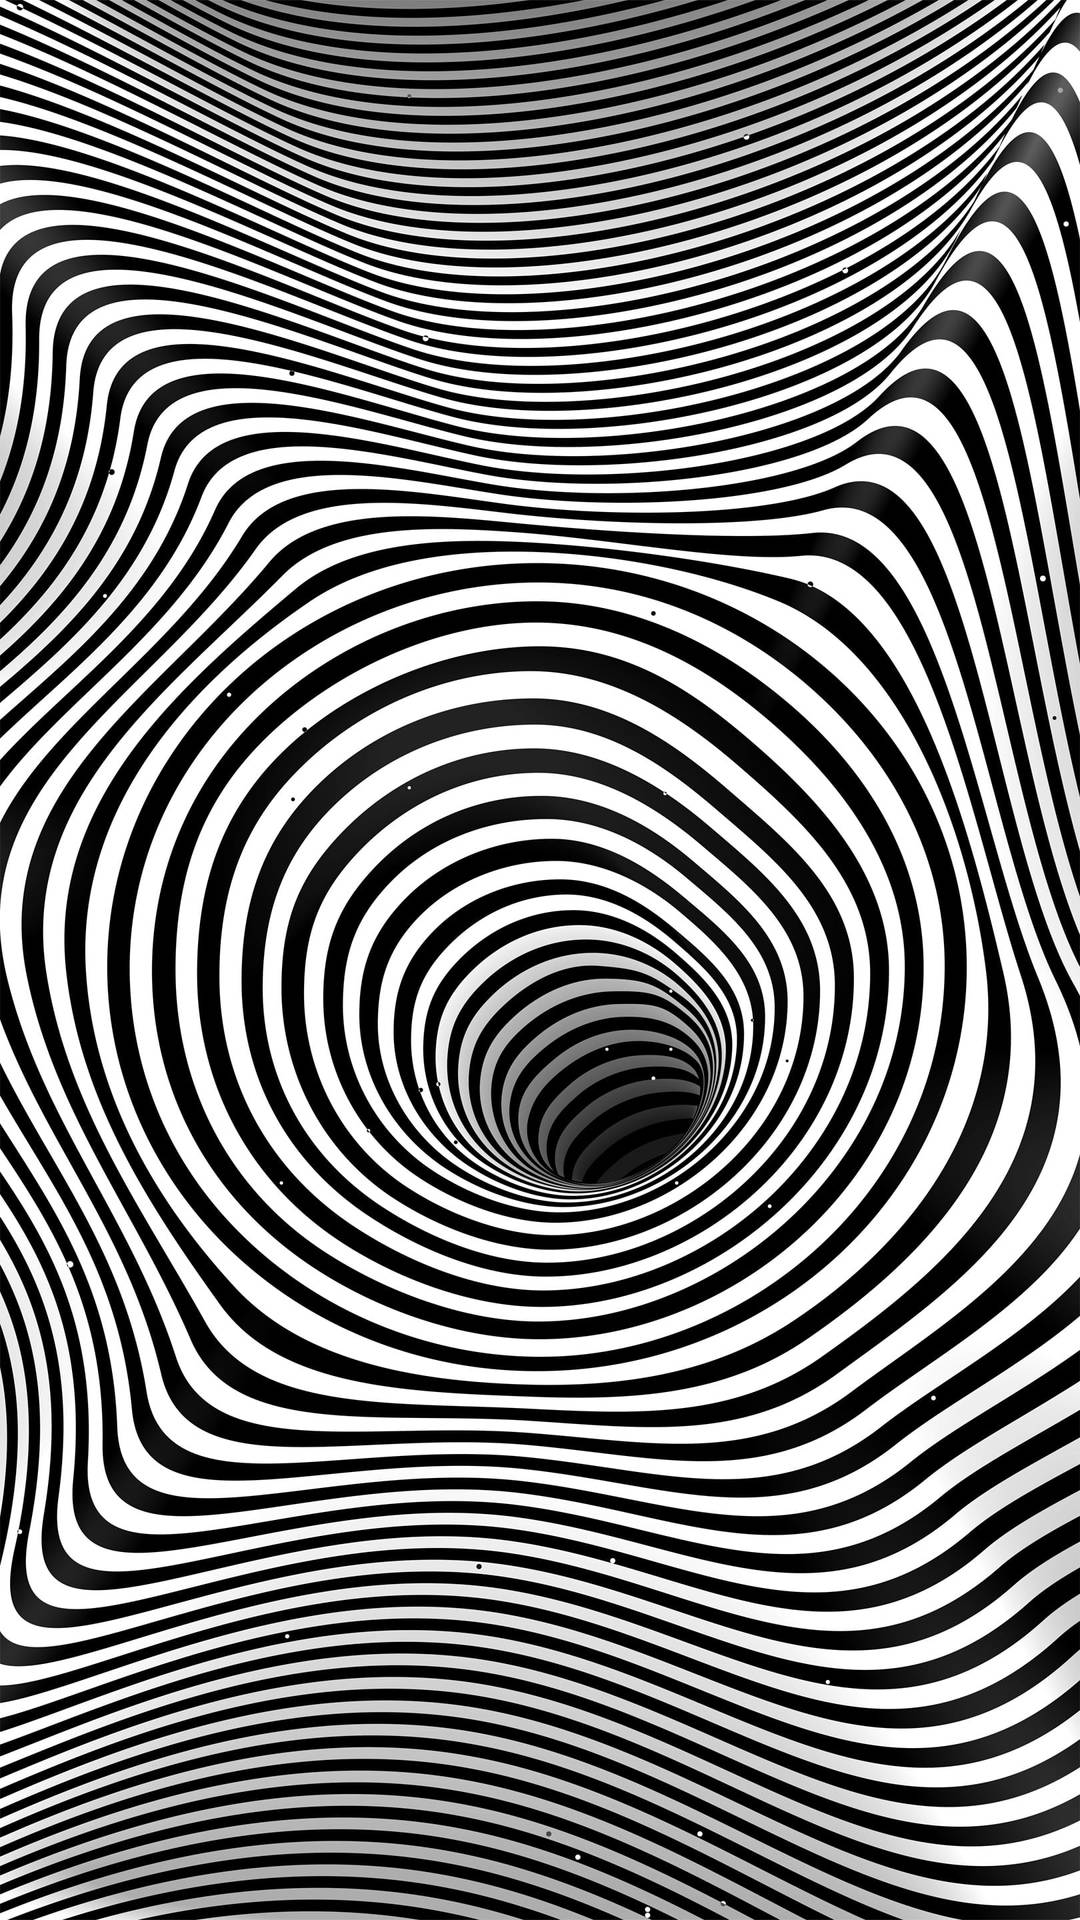 Hypnosis Circles Black Hole